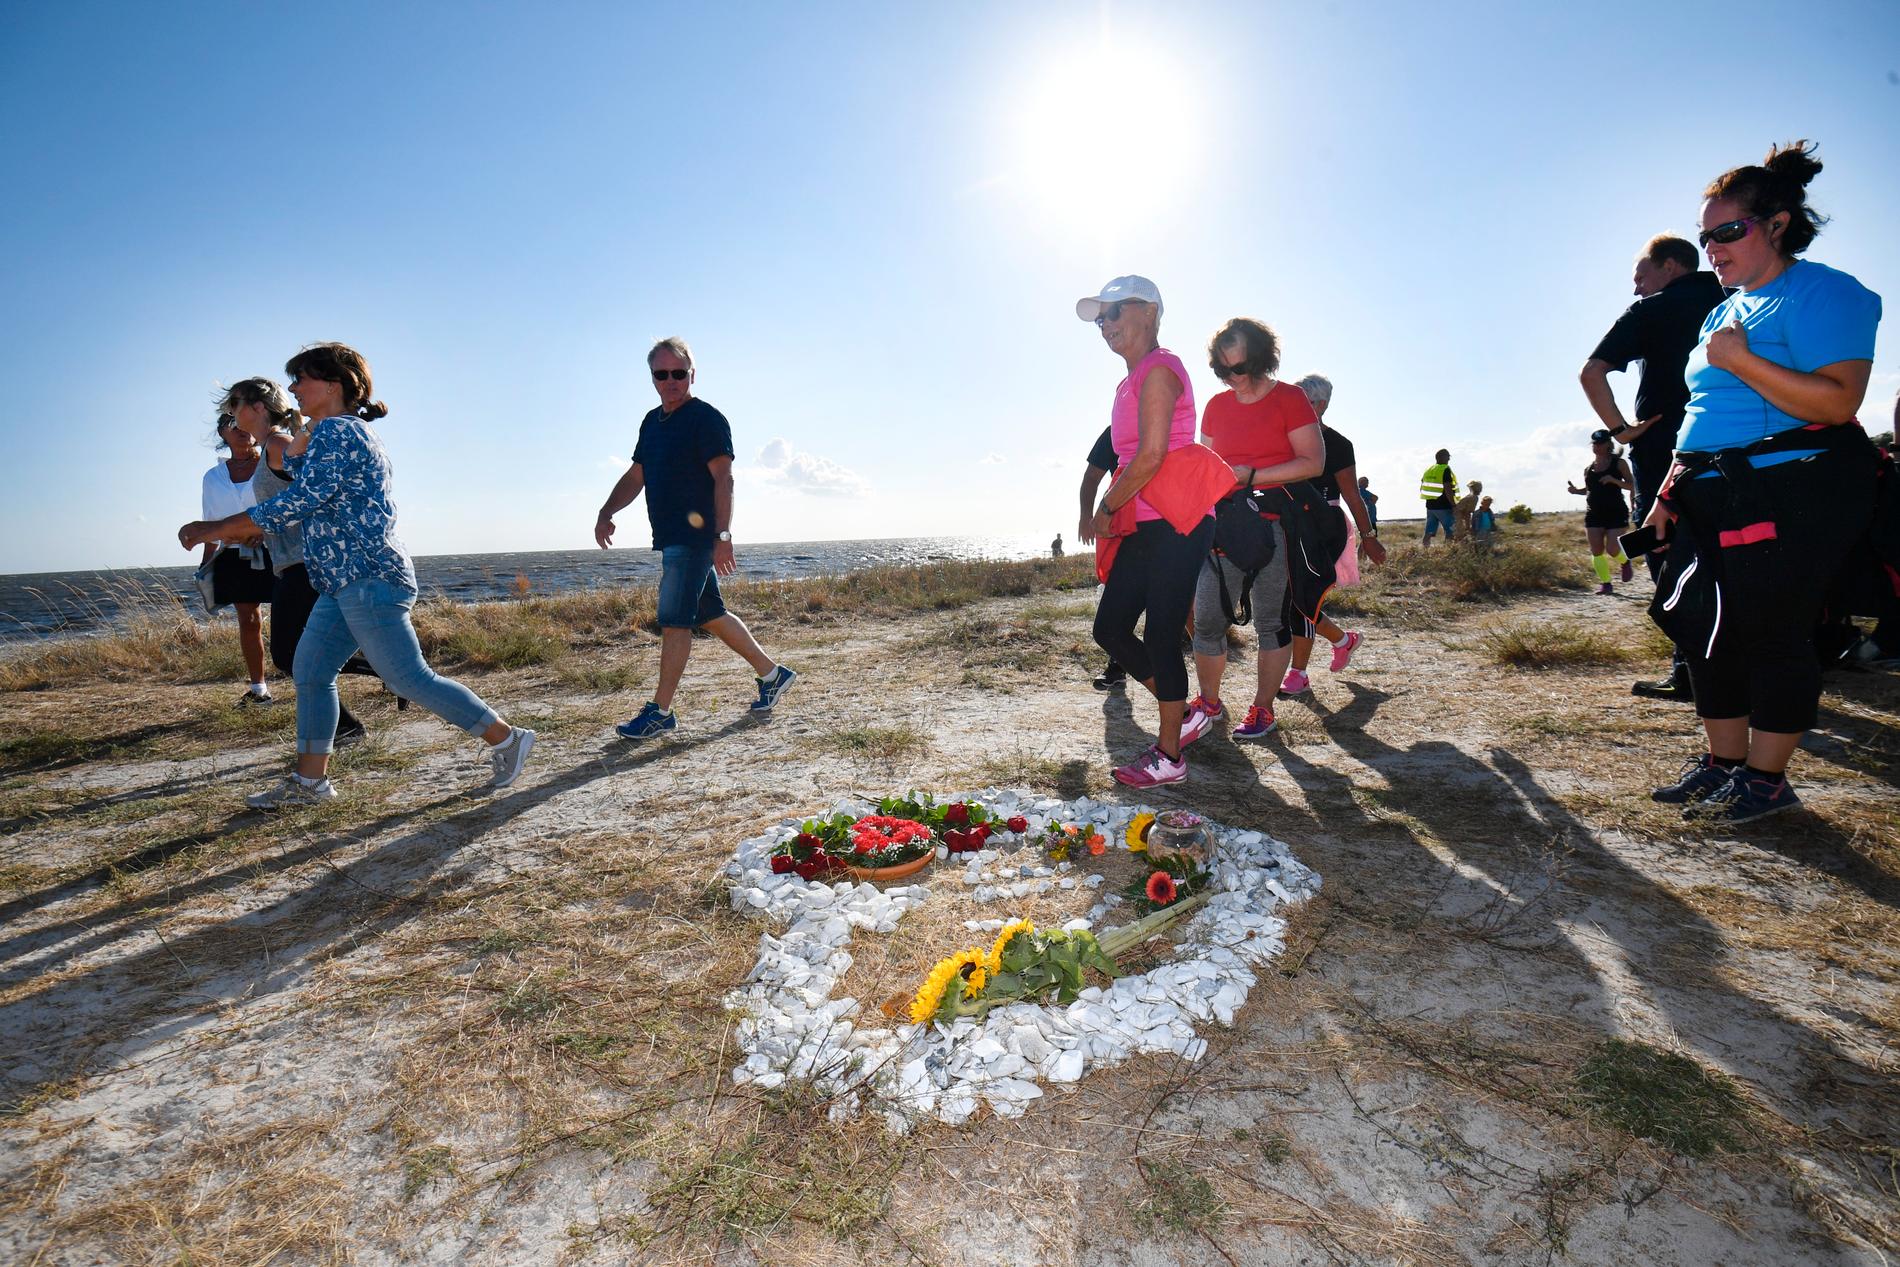 Över 570 personer har anmält sig för att springa ett minneslopp i Trelleborg för att hedra den mördade journalisten Kim Wall. Deltagarna passerar bland annat en minnesplats för Kim Wall, som byggts av vita stenar på stranden.